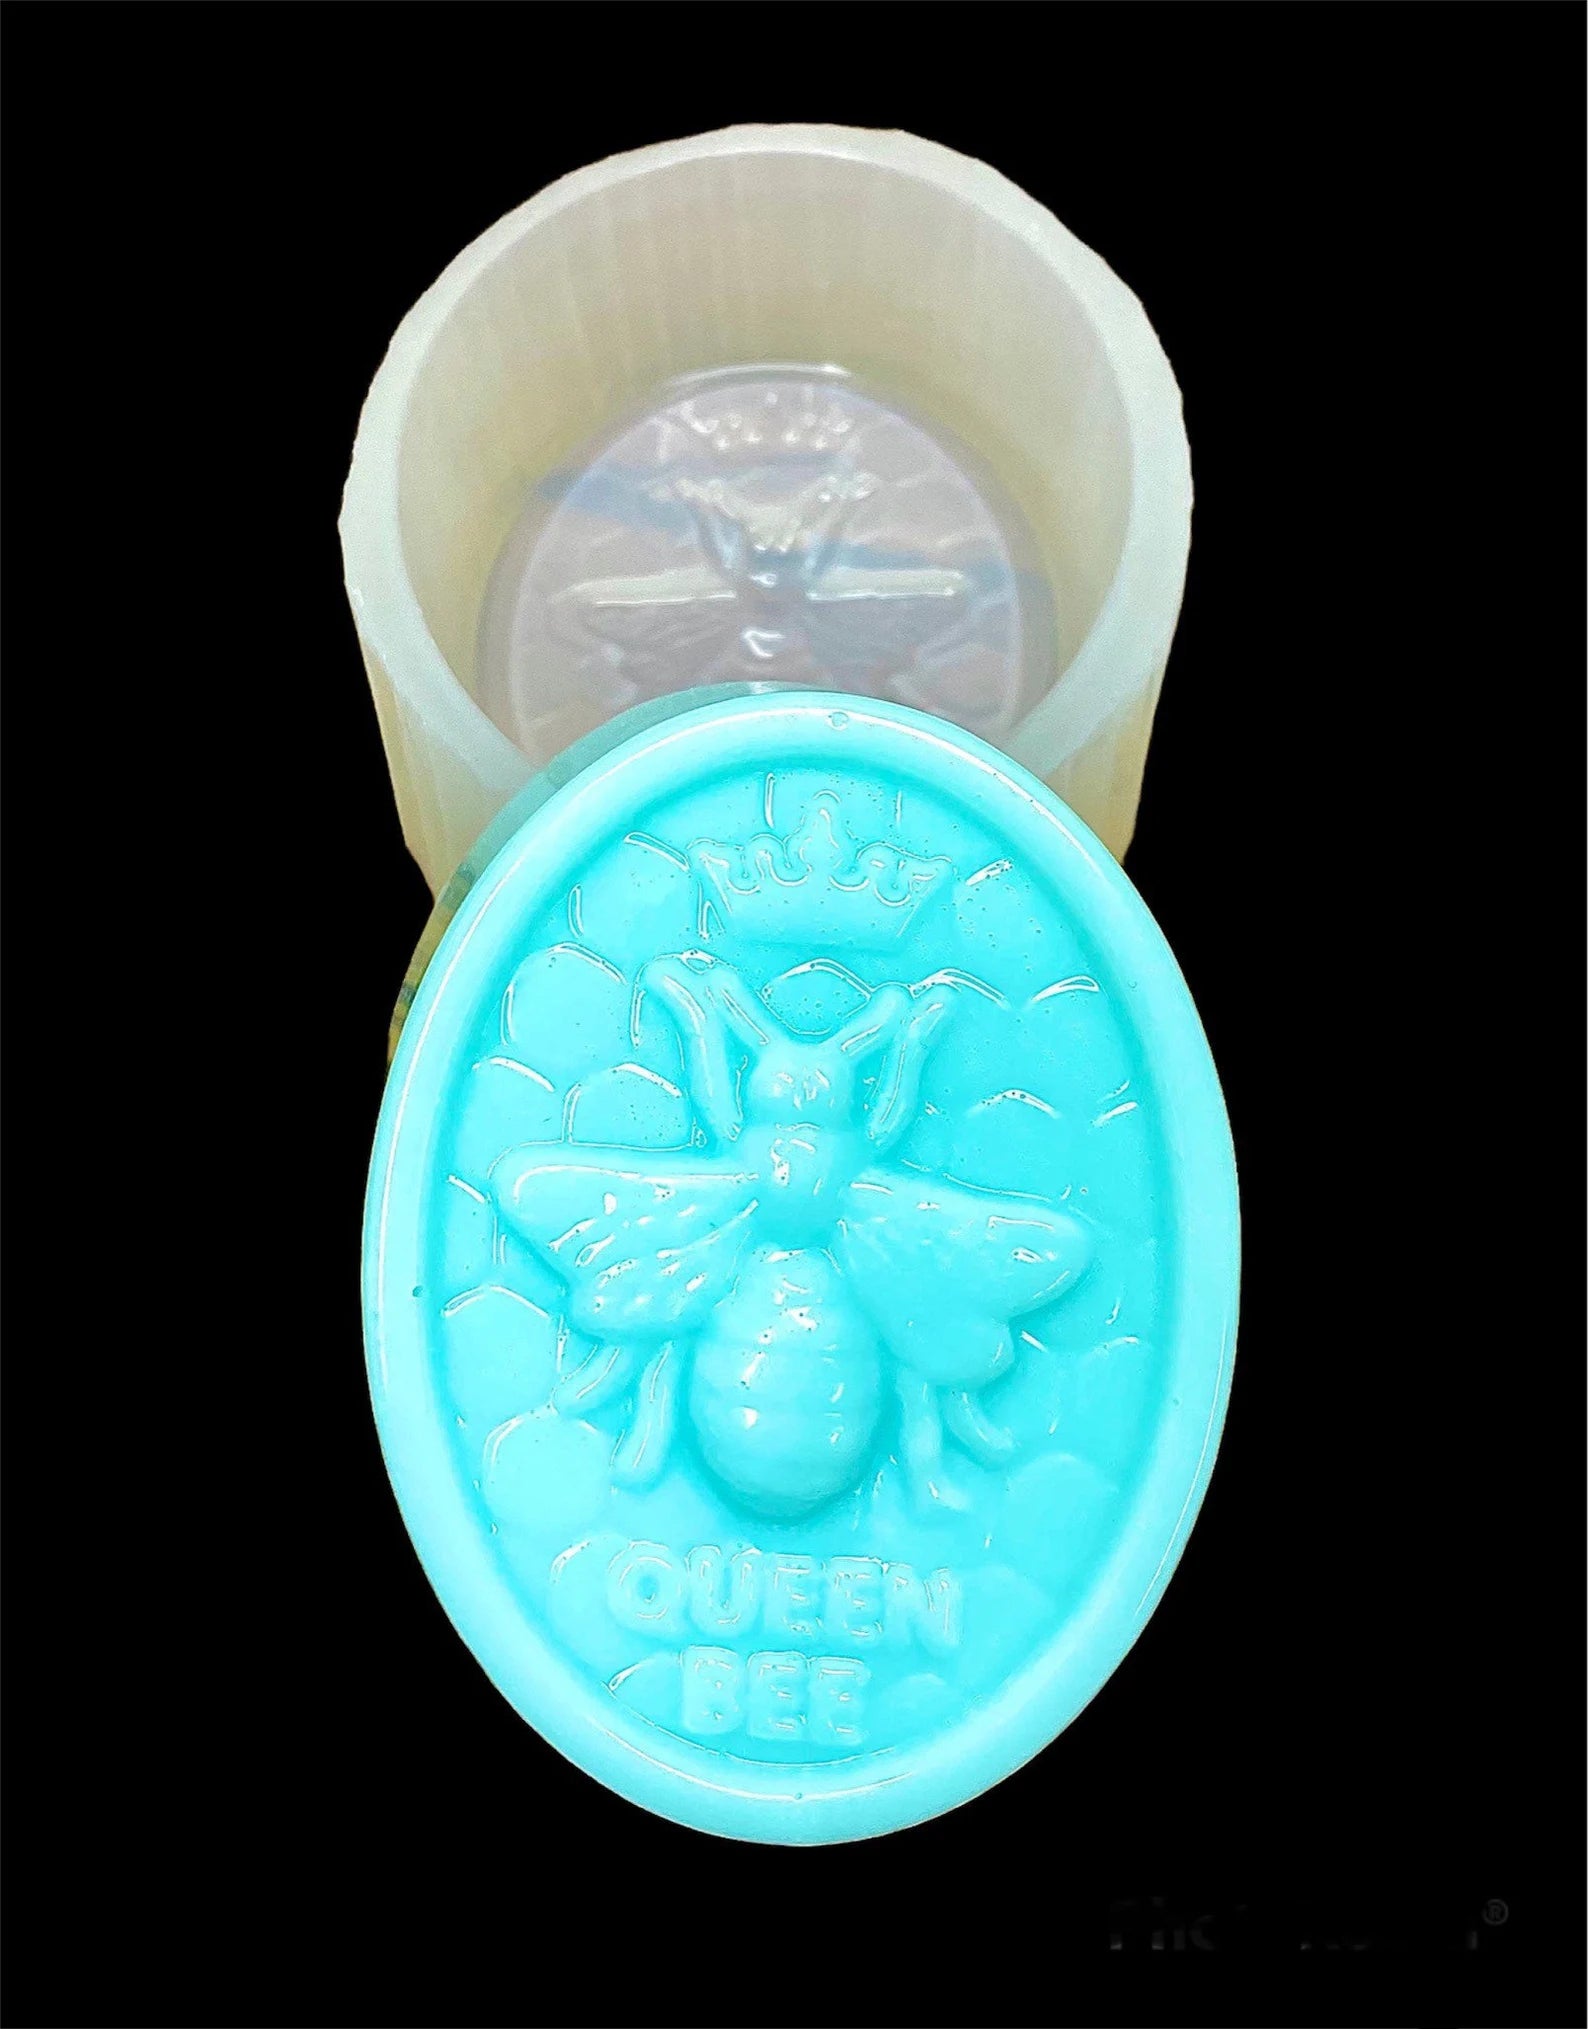 Silicone honeybee queen bee soap Mold - wax lotion bar mold - handmade -  food grade